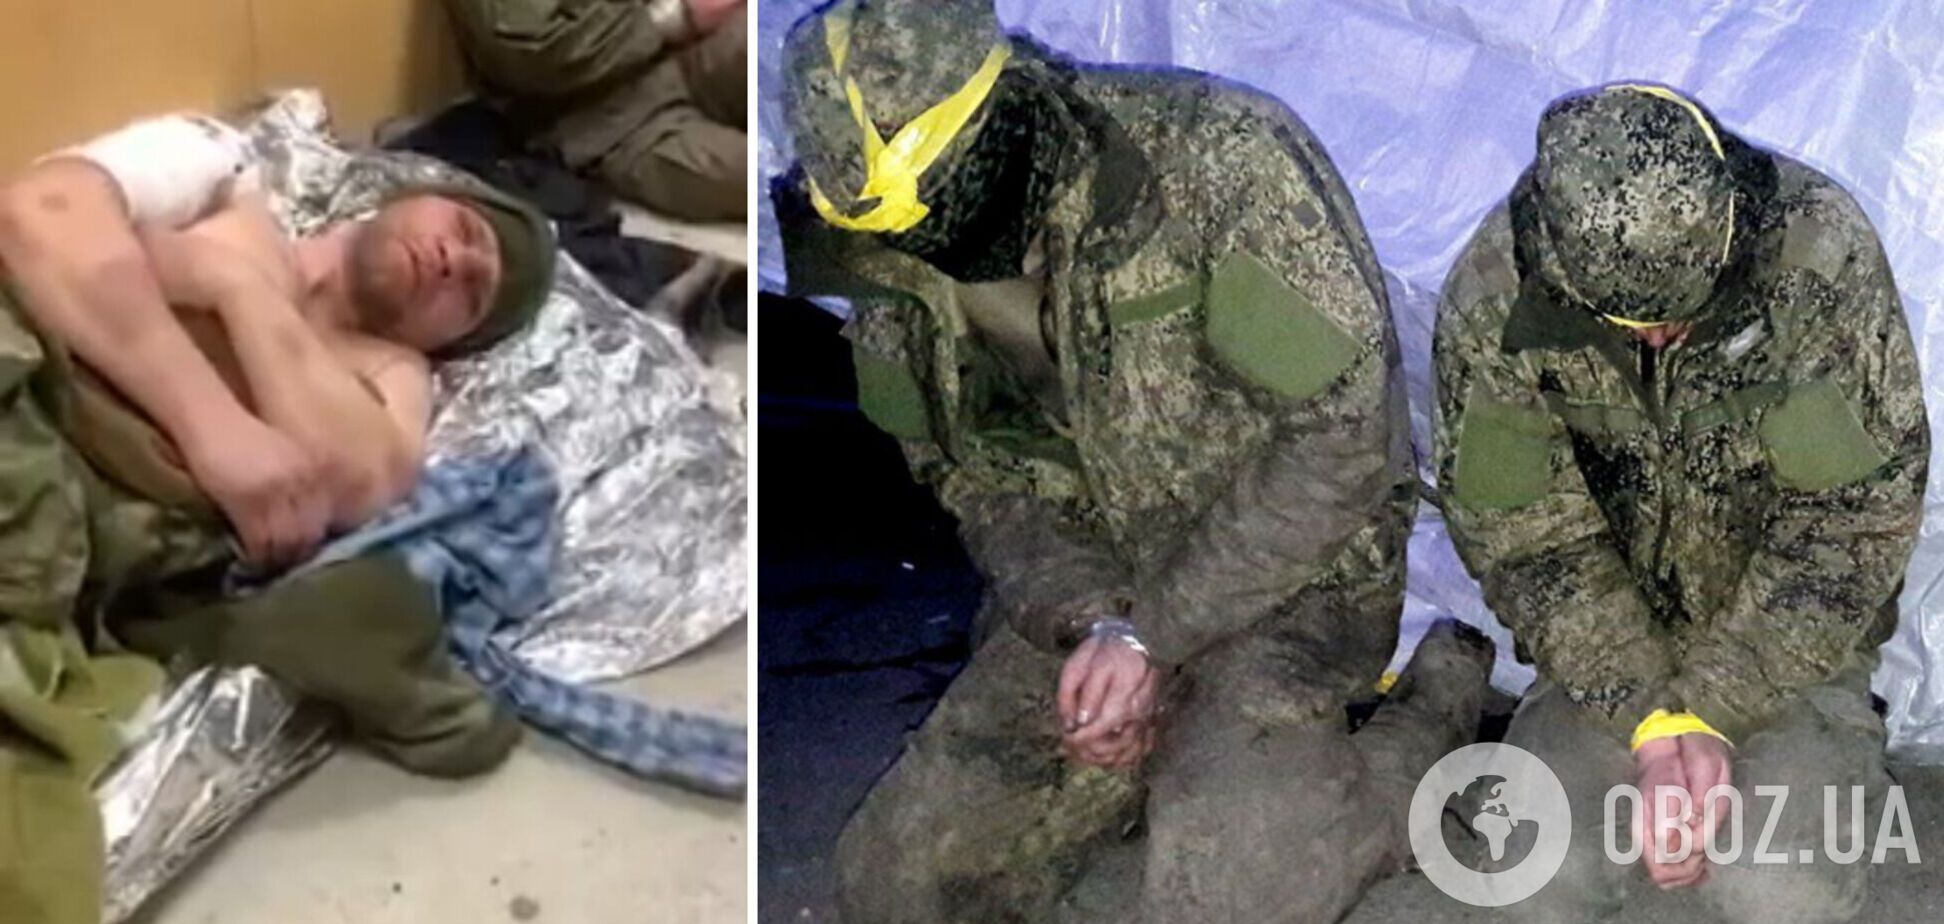 Защитники Украины захватили в плен группу оккупантов: среди них – наемник из ЧВК. Видео